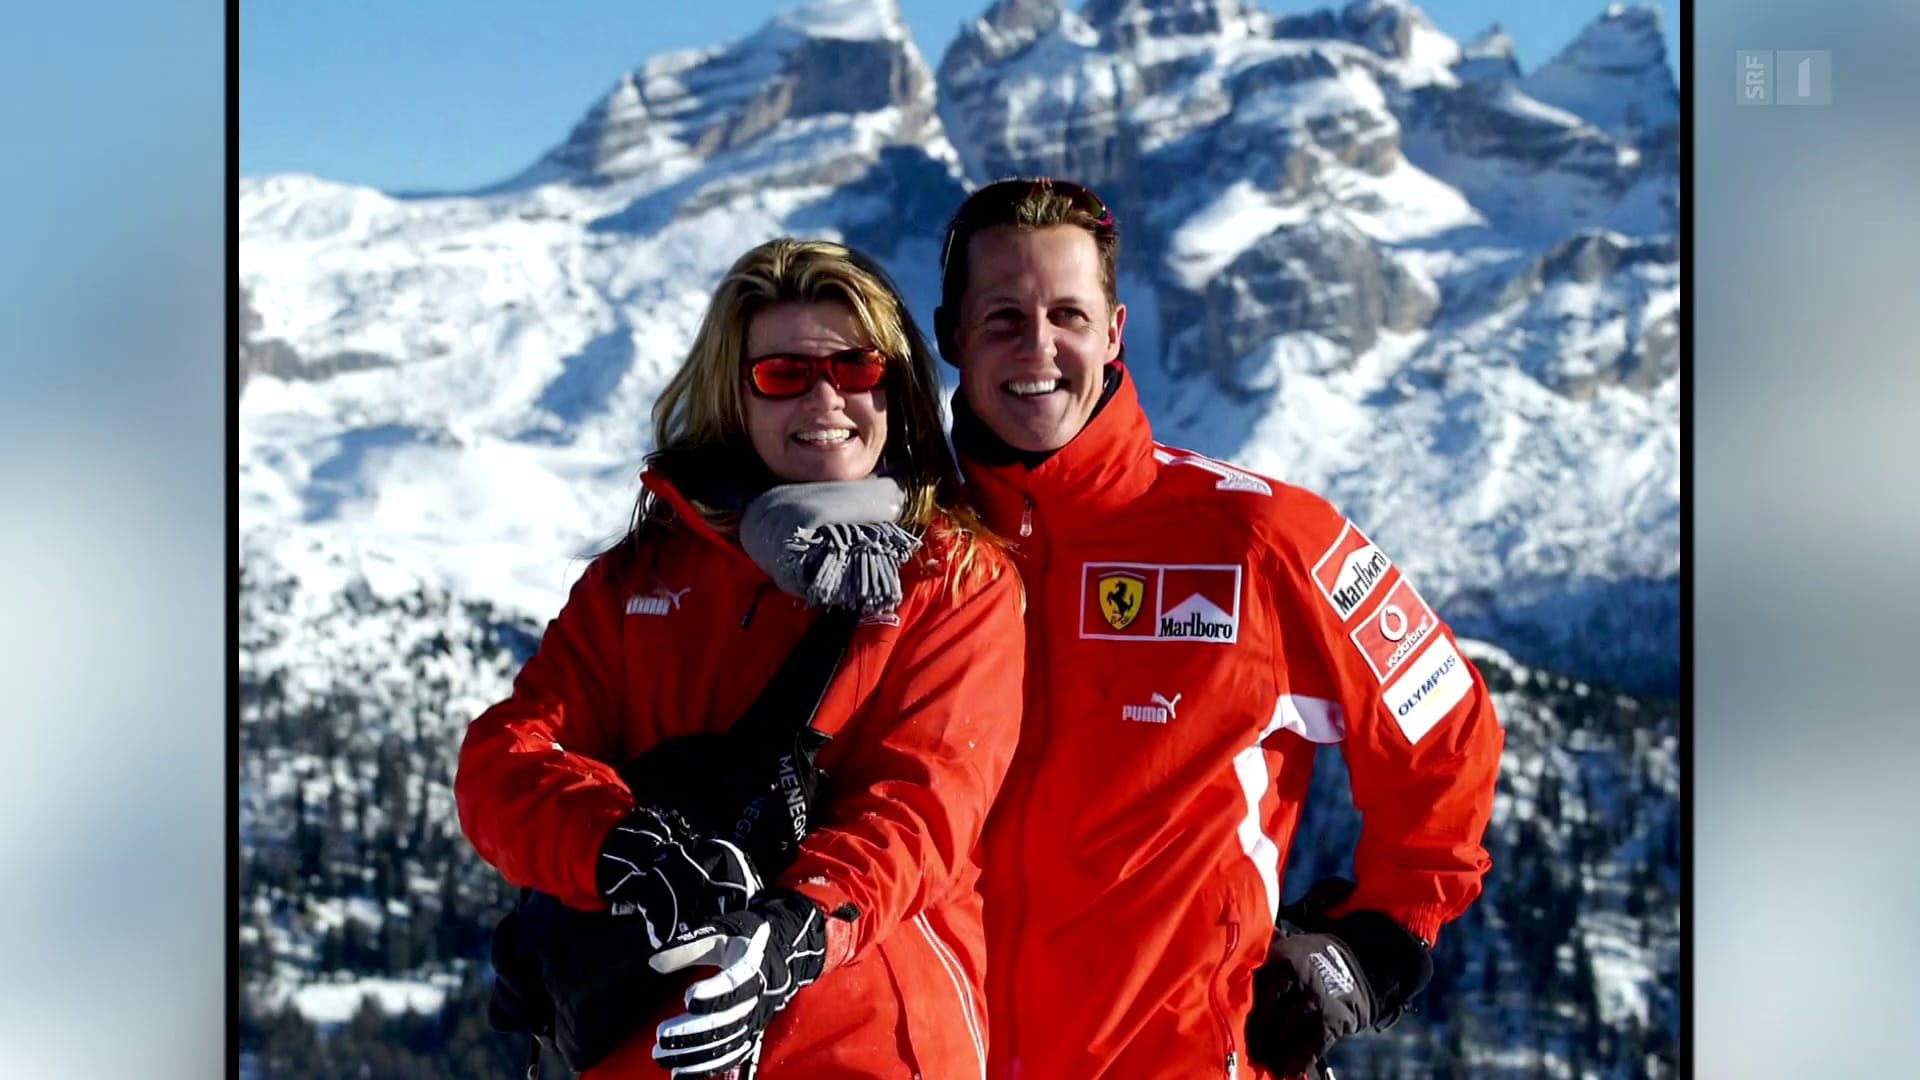 Michael Schumachers Skiunfall-Jahrestag: Ein verrücktes Leben